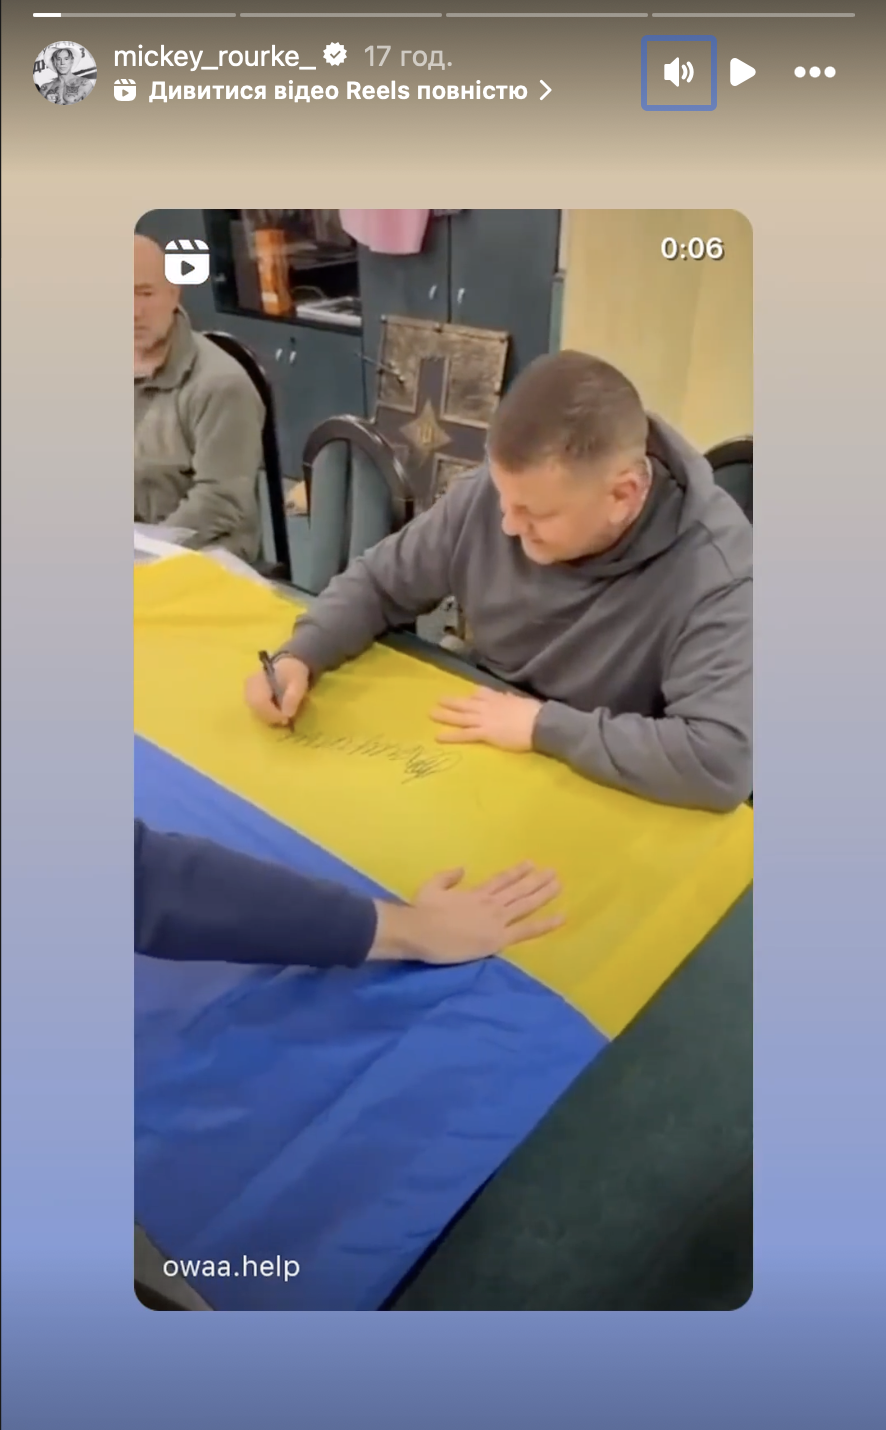 Микки Рурк показал видео с Залужным и призвал всех донатить Украине